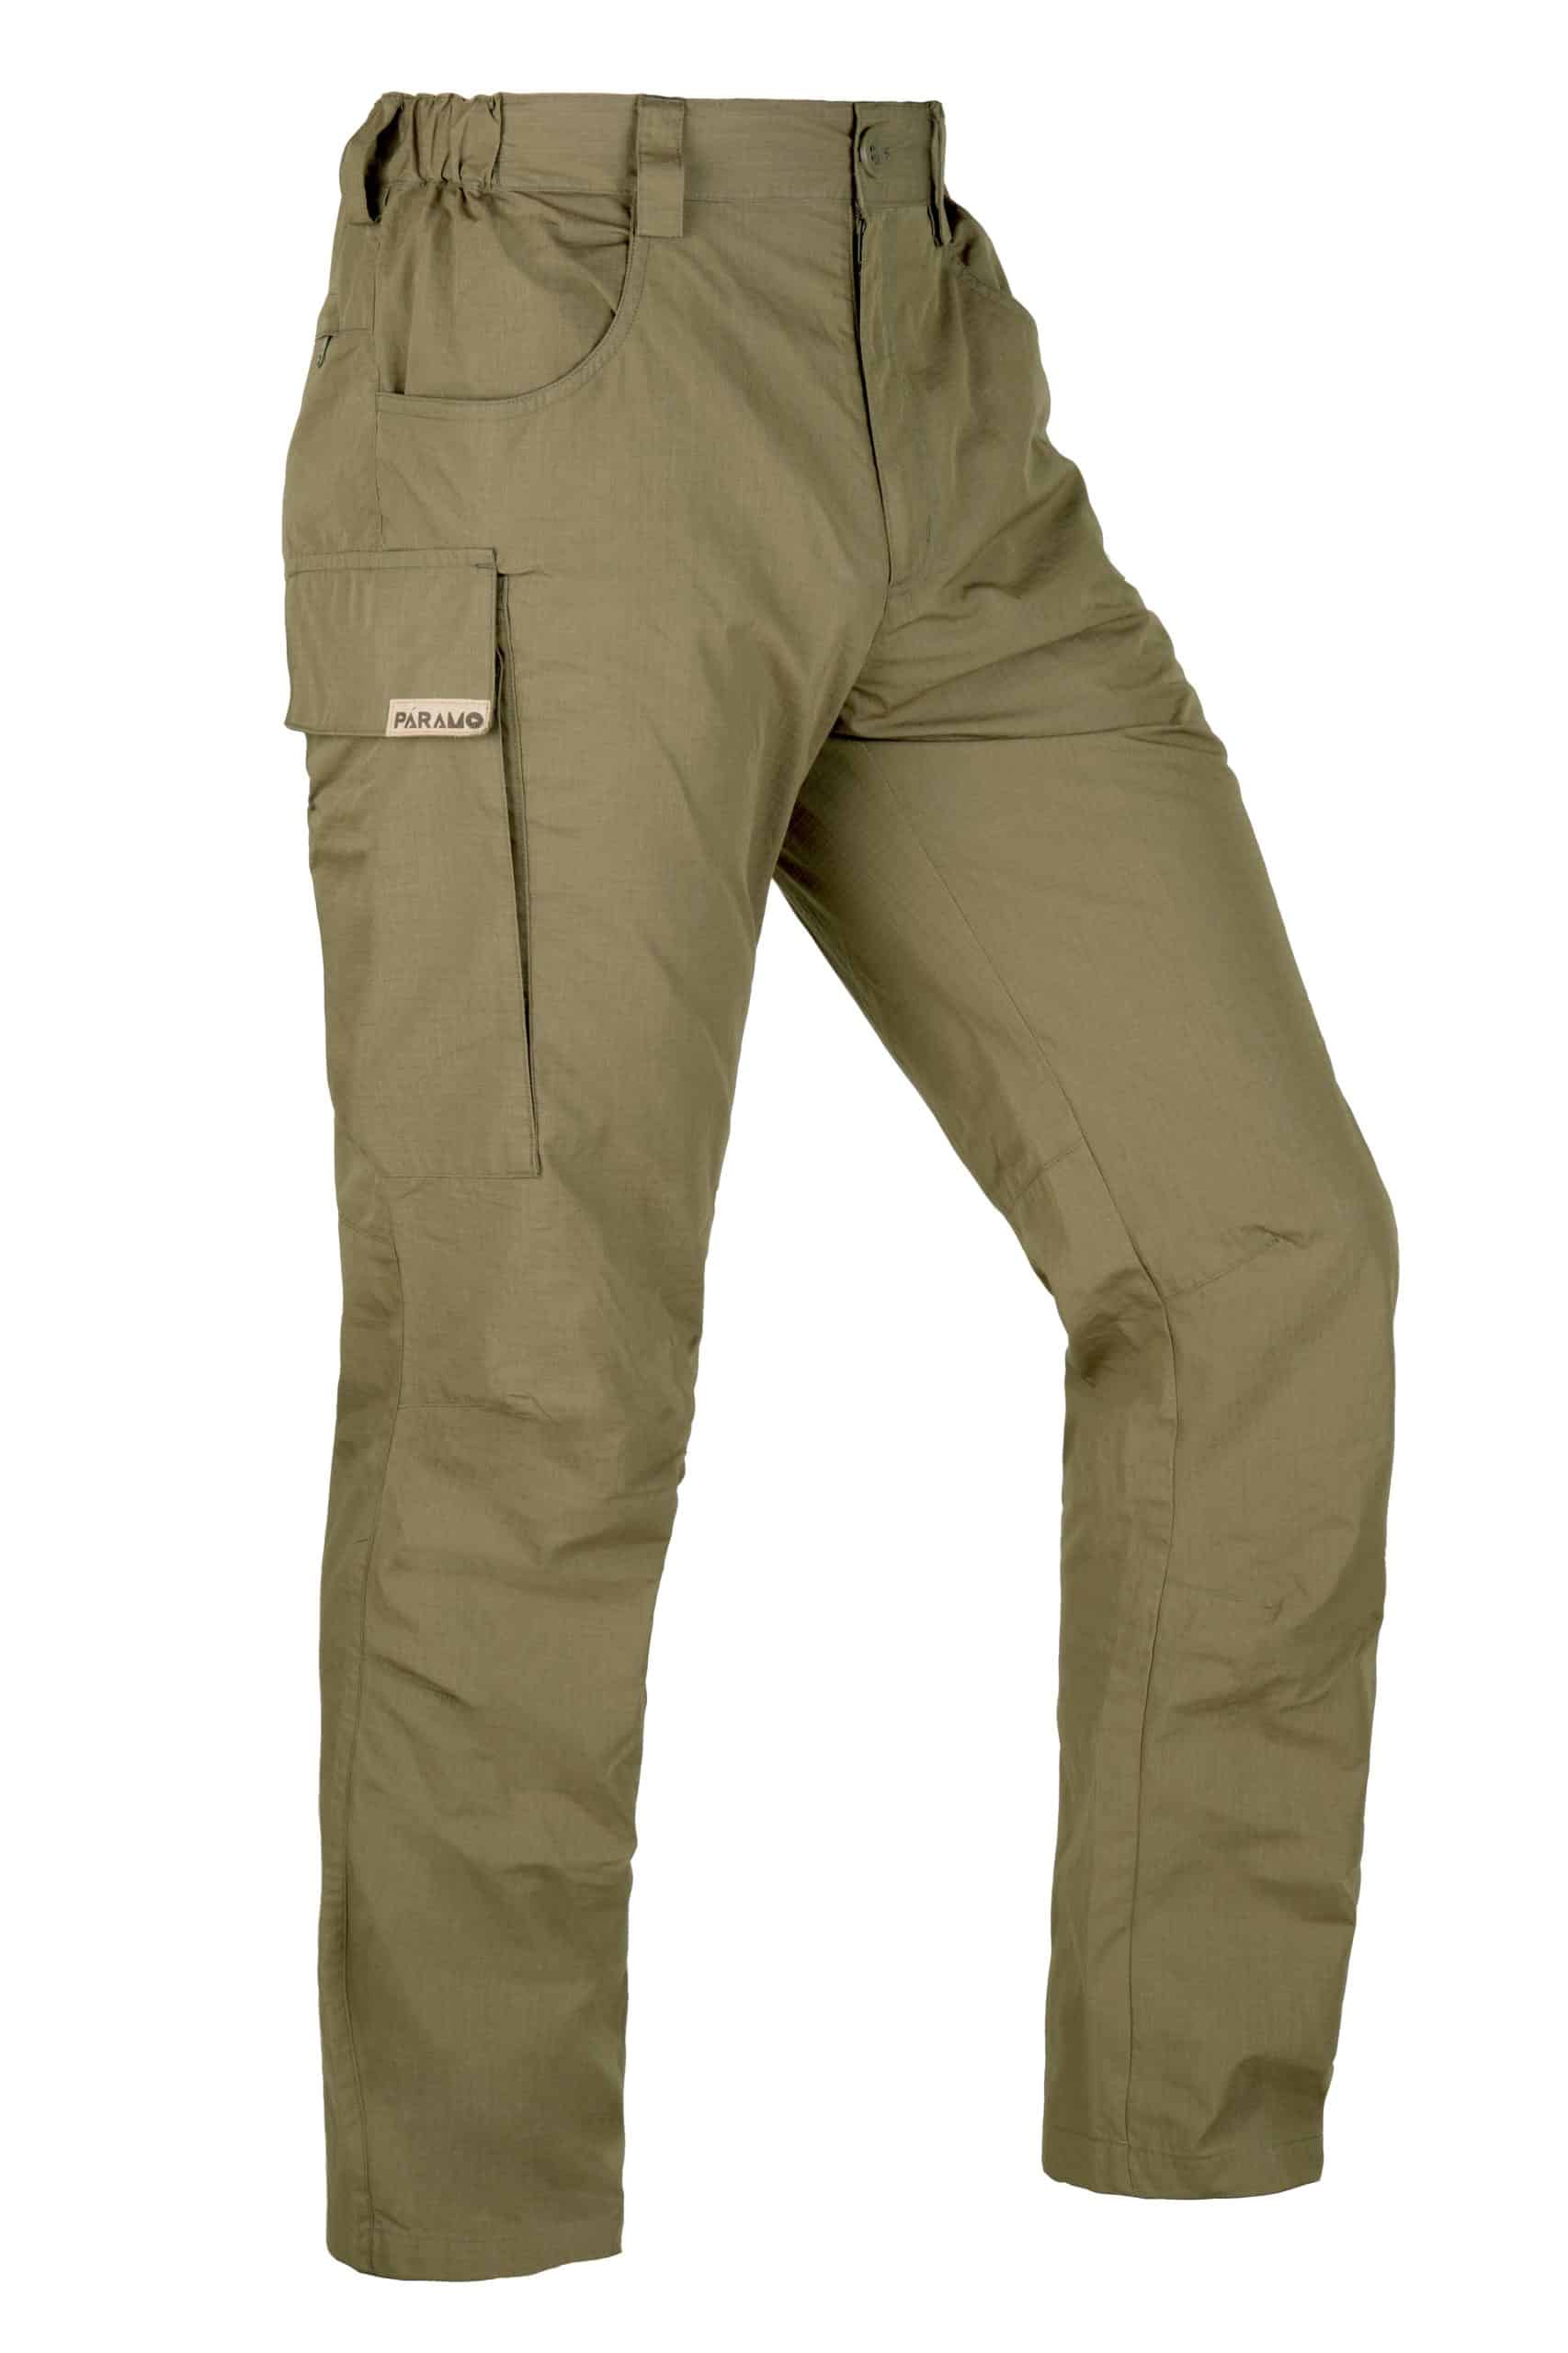 Paramo Clothing Review Cascada II Trousers Bentu Fleece Bentu Windproof  Jacket and Torres Alturo Jacket  Wild Walking UK  